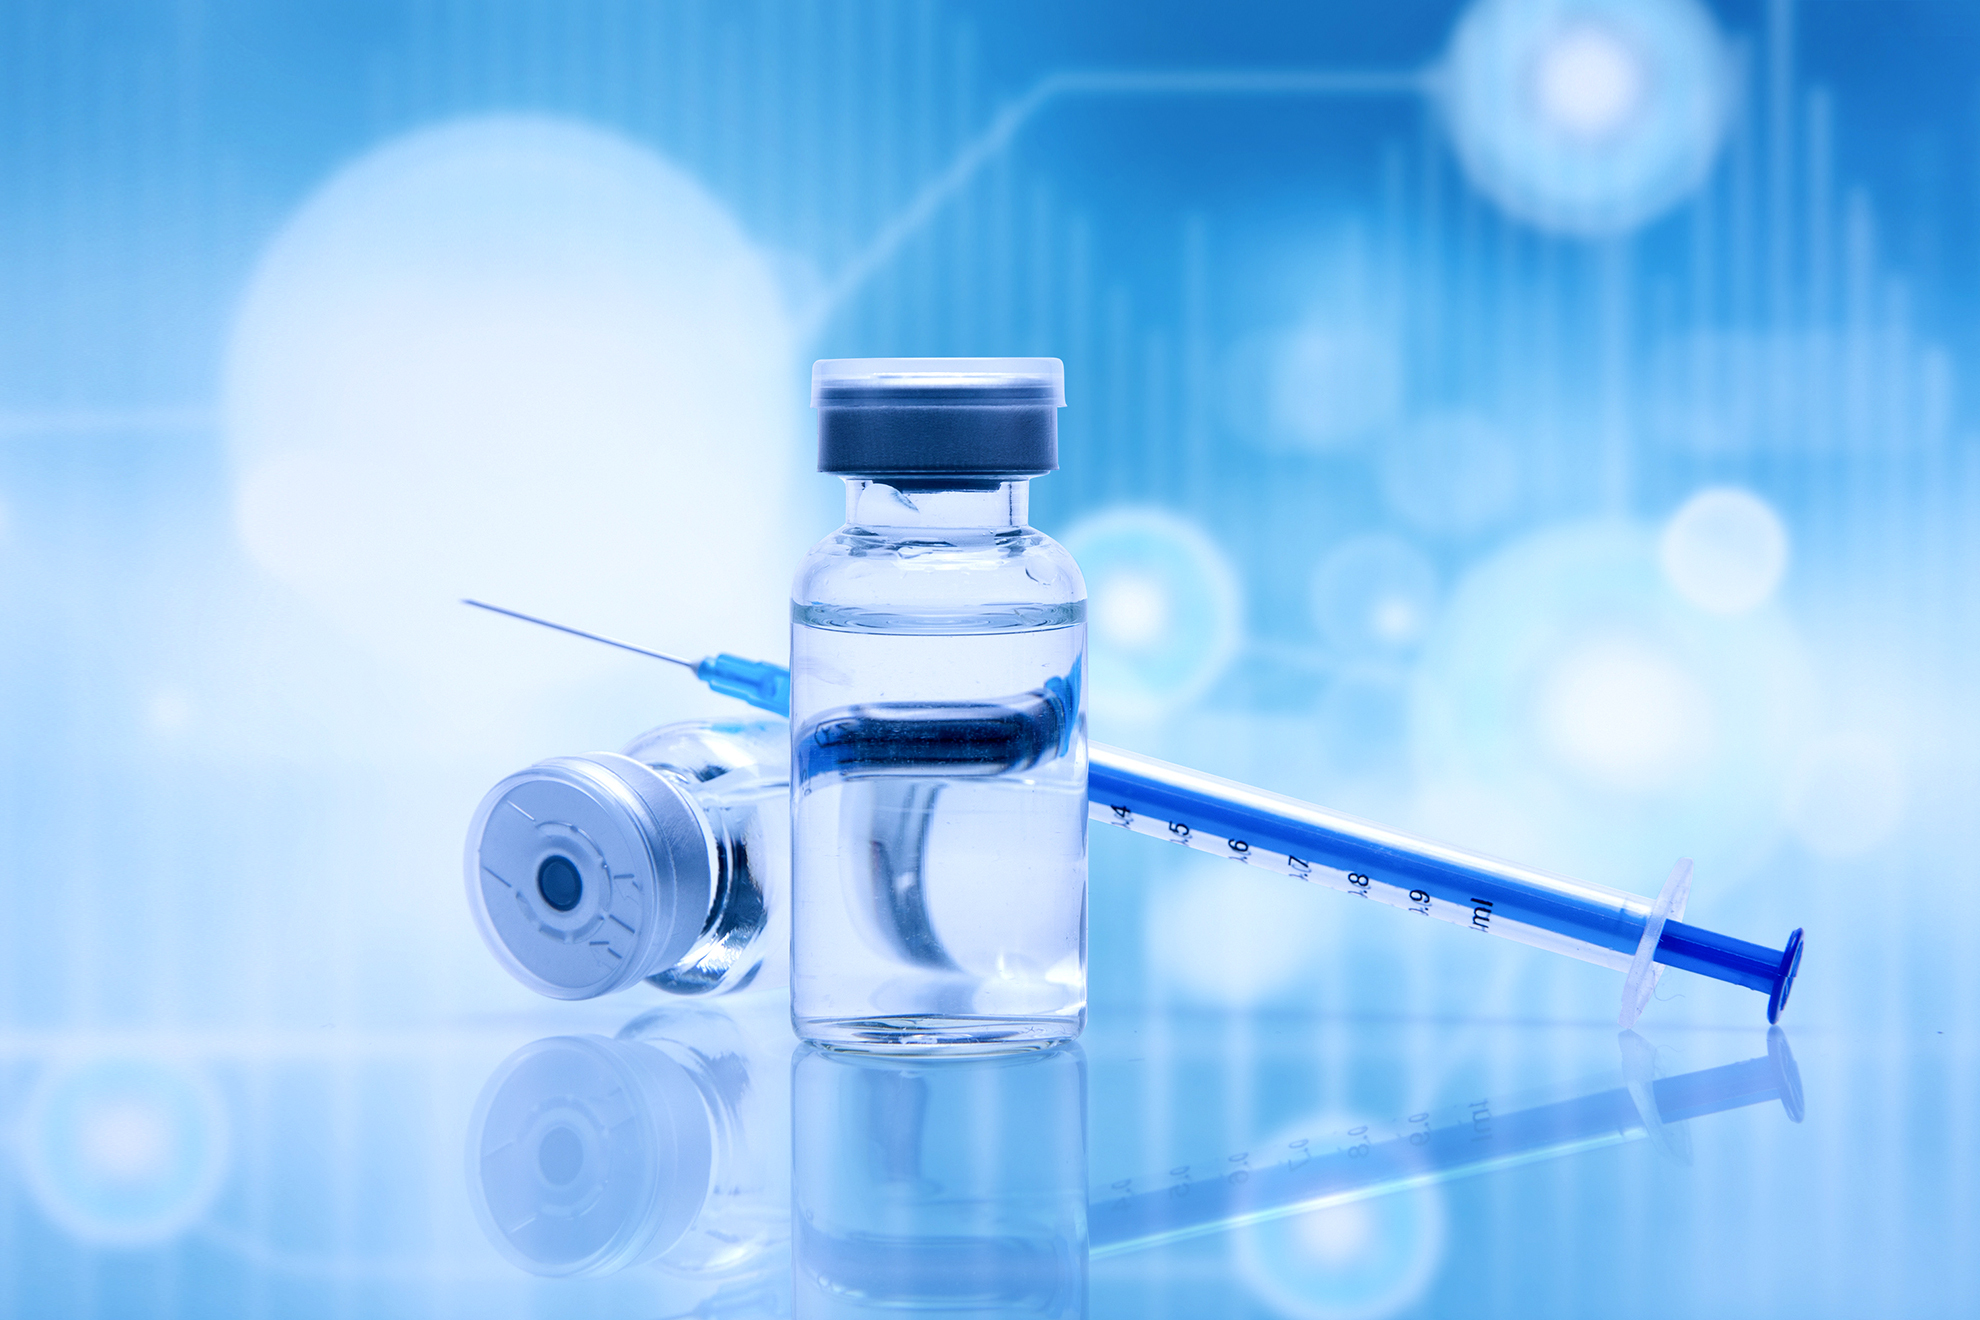 阿斯利康:与牛津研发的新冠疫苗年内启动中国临床试验|新冠肺炎_新浪财经_新浪网